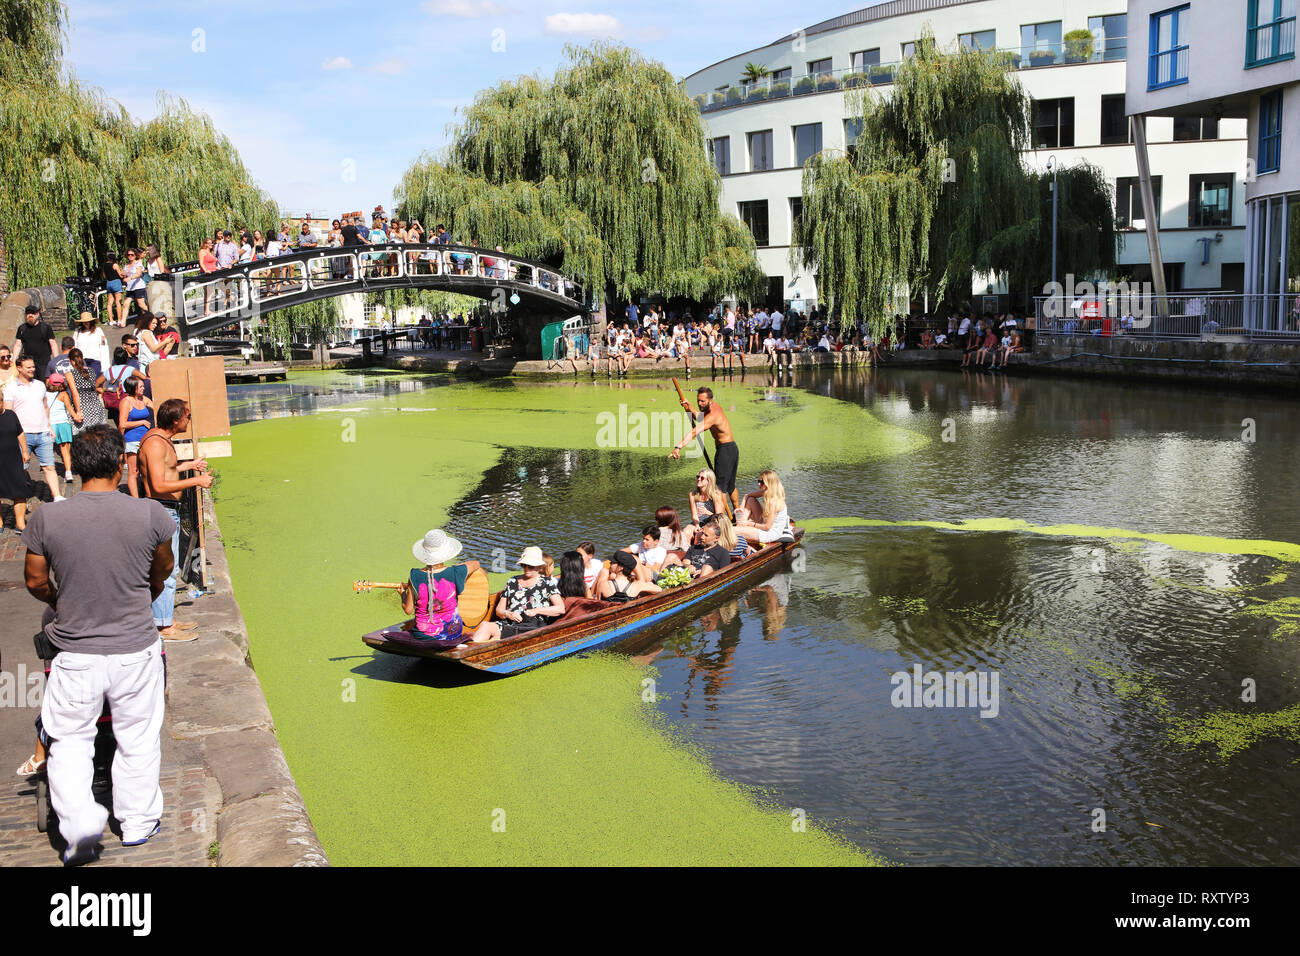 In der Nähe von pastorale Szene von Menschen genießen Sie einen sonnigen Tag am Regent's Canal in der Nähe von Camden Markt im Herzen von London, Vereinigtes Königreich Stockfoto